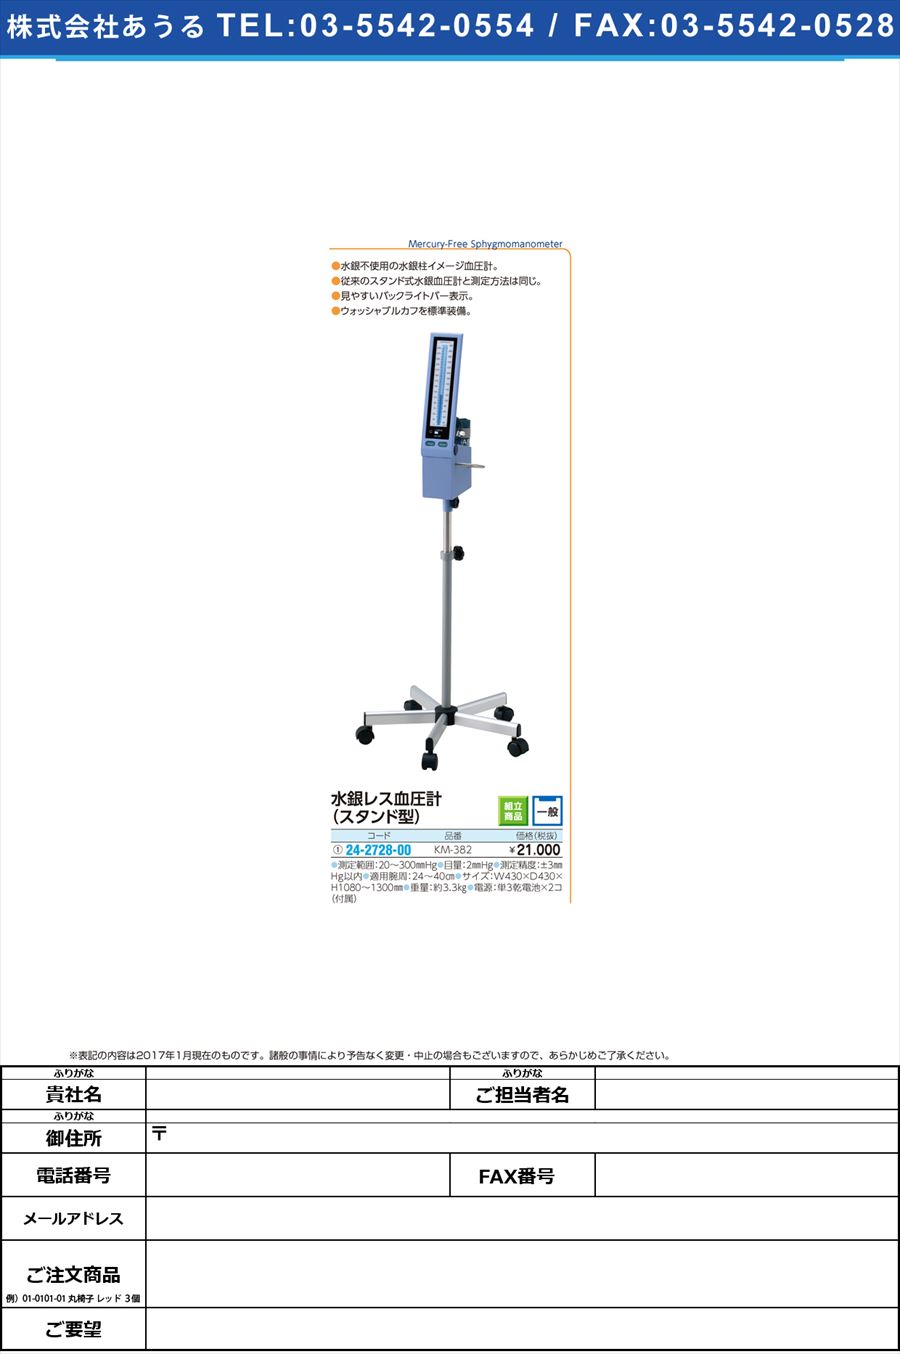 水銀レス血圧計（スタンド型） ｽｲｷﾞﾝﾚｽｹﾂｱﾂｹｲｽﾀﾝﾄﾞ KM-382(24-2728-00)